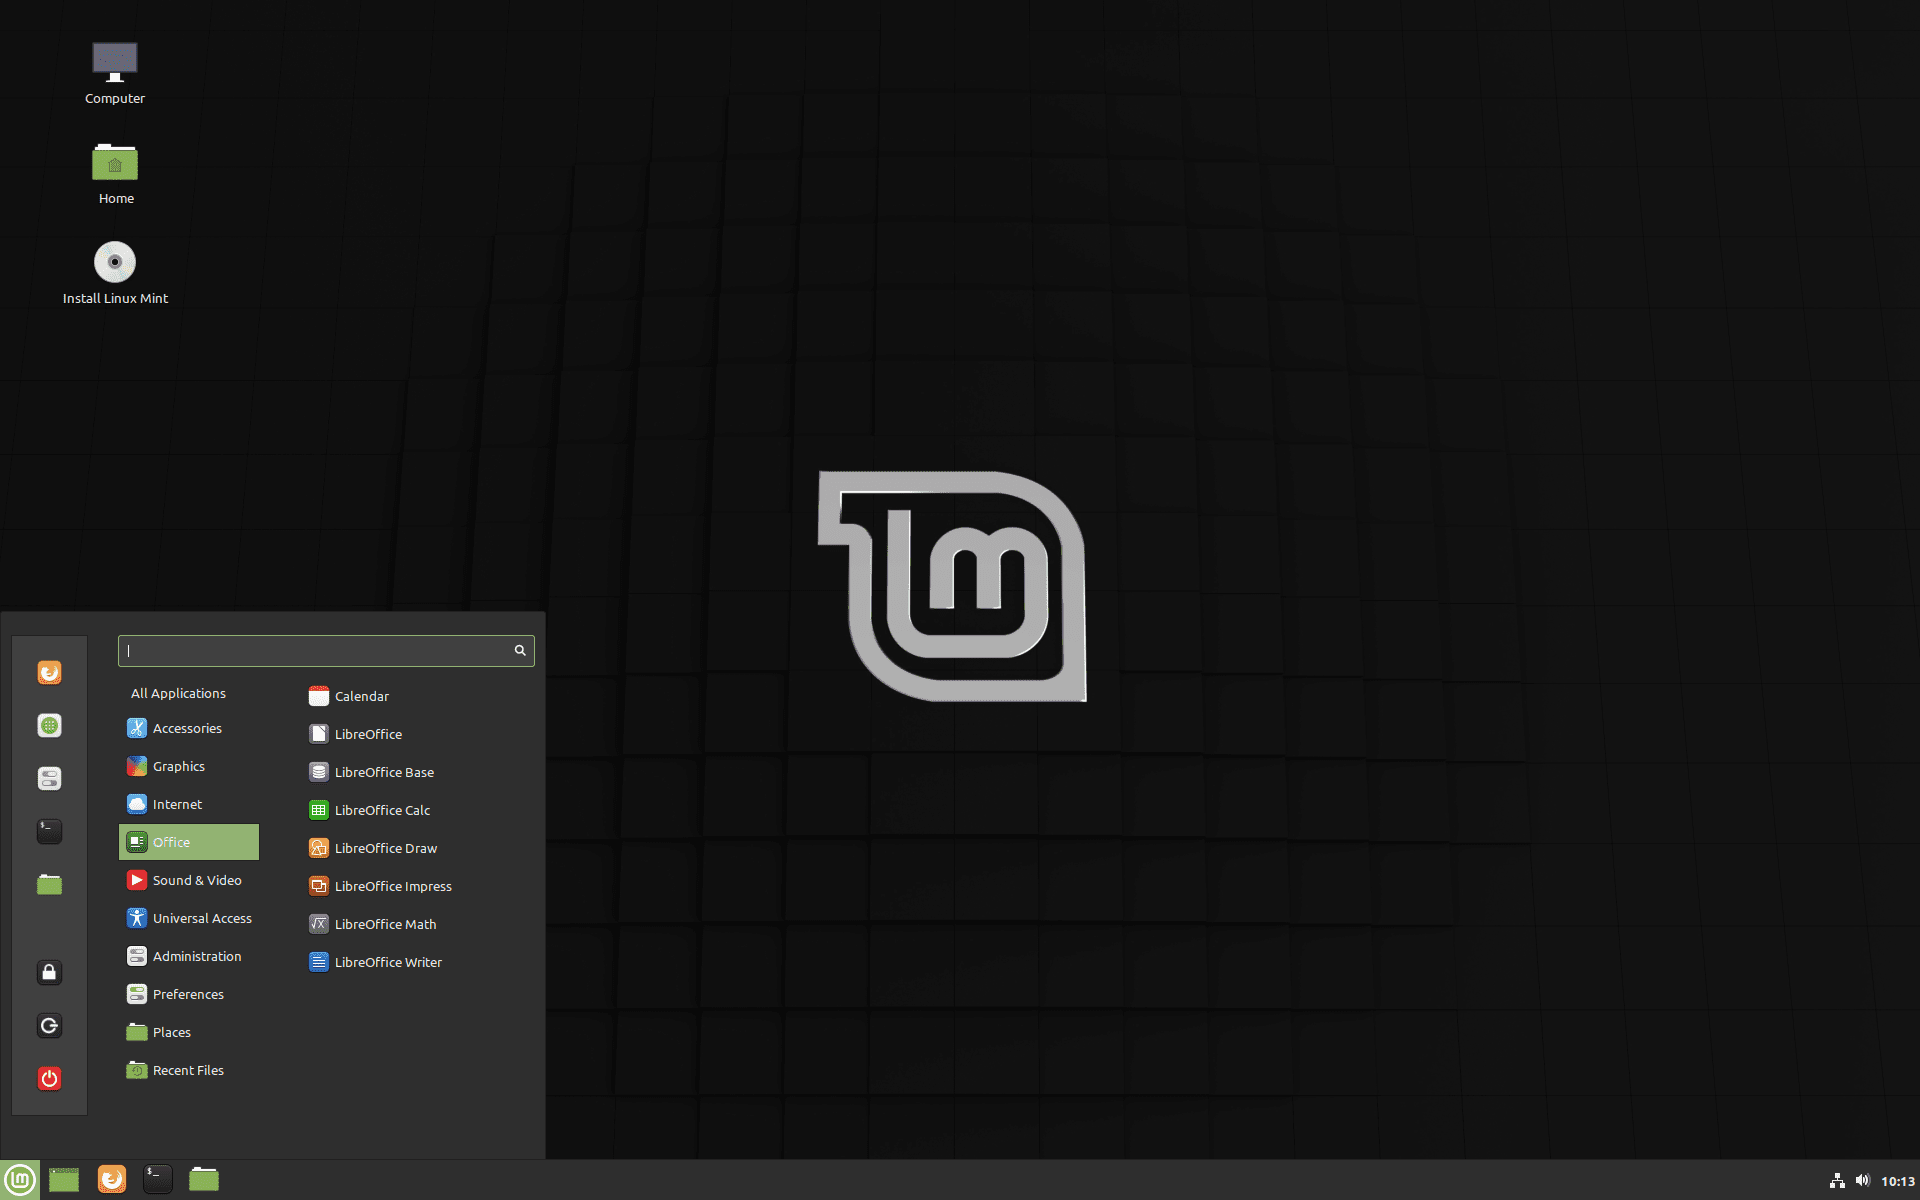 Linux Mint default interface